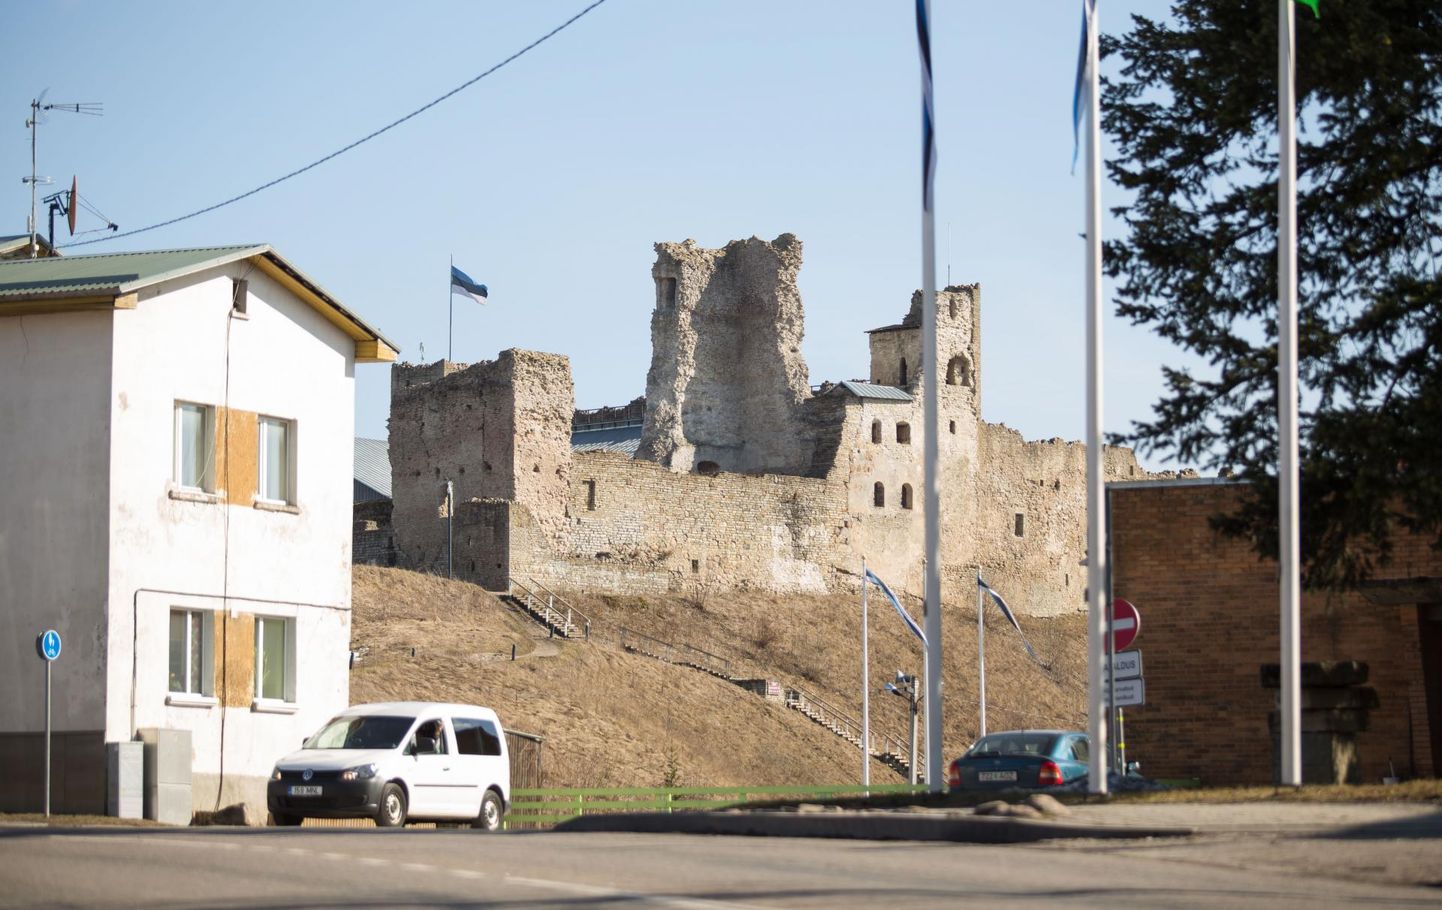 Eesti esimene üldluulepidu toimub Rakvere linnuses.